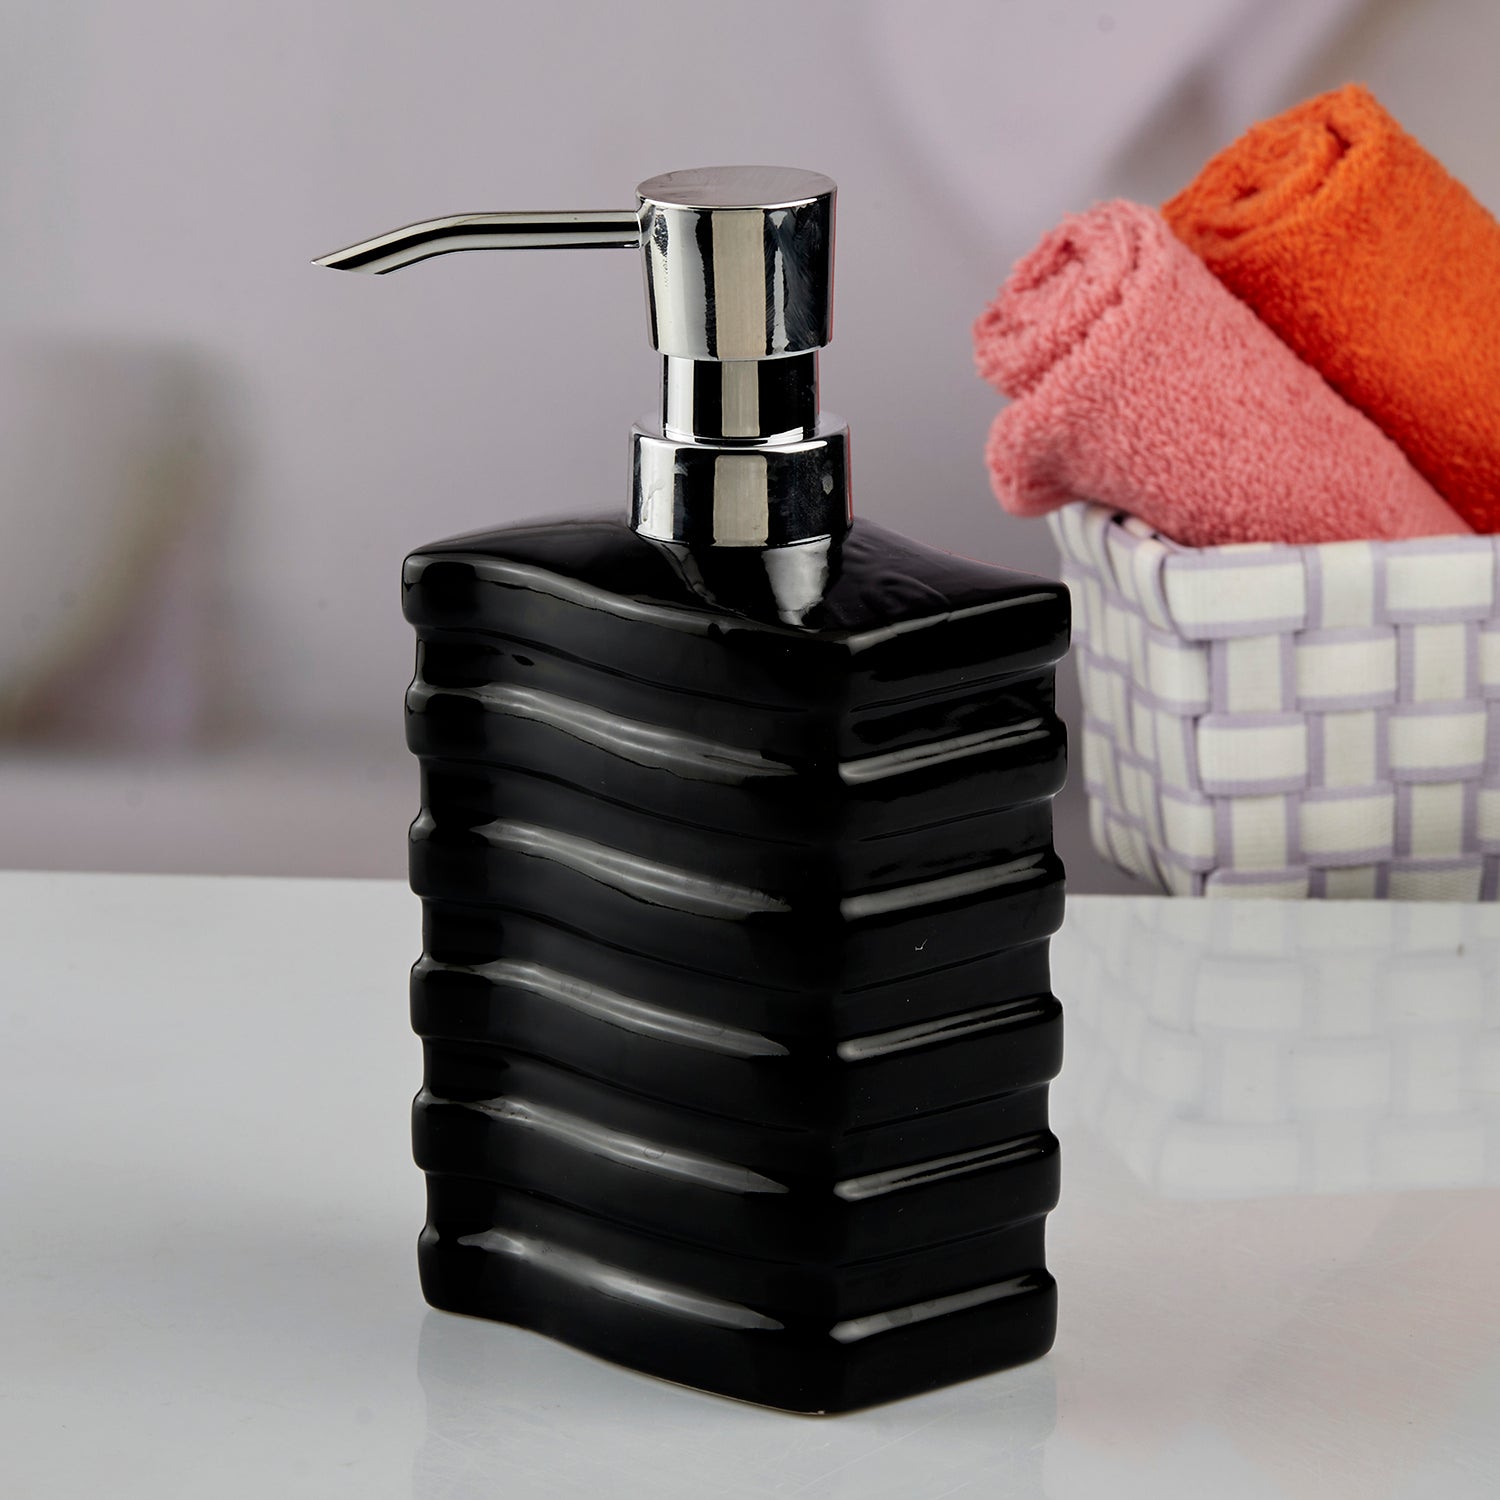 Ceramic Soap Dispenser liquid handwash pump for Bathroom, Set of 1, White (10614)